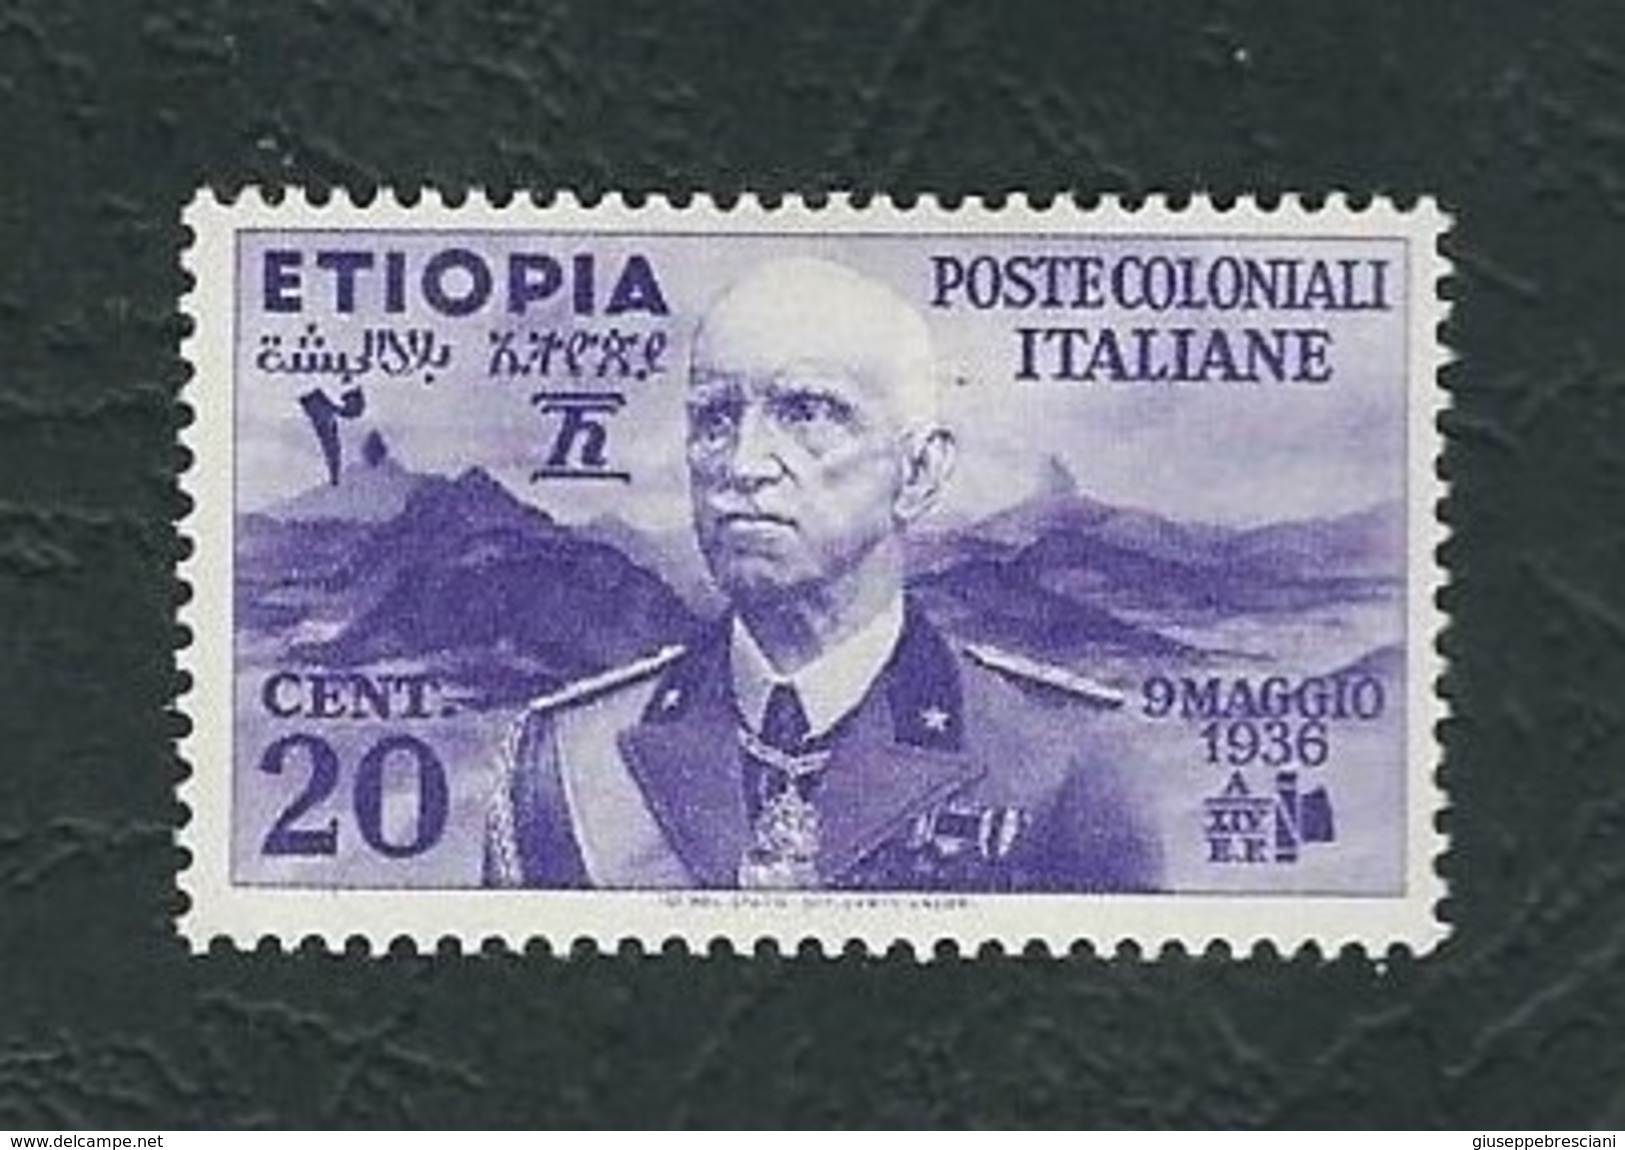 ETIOPIA 1936 - Effigie Di Vittorio Emanuele III - 20 C. Violetto - MH - Sa:IT-ET 2 - Ethiopie